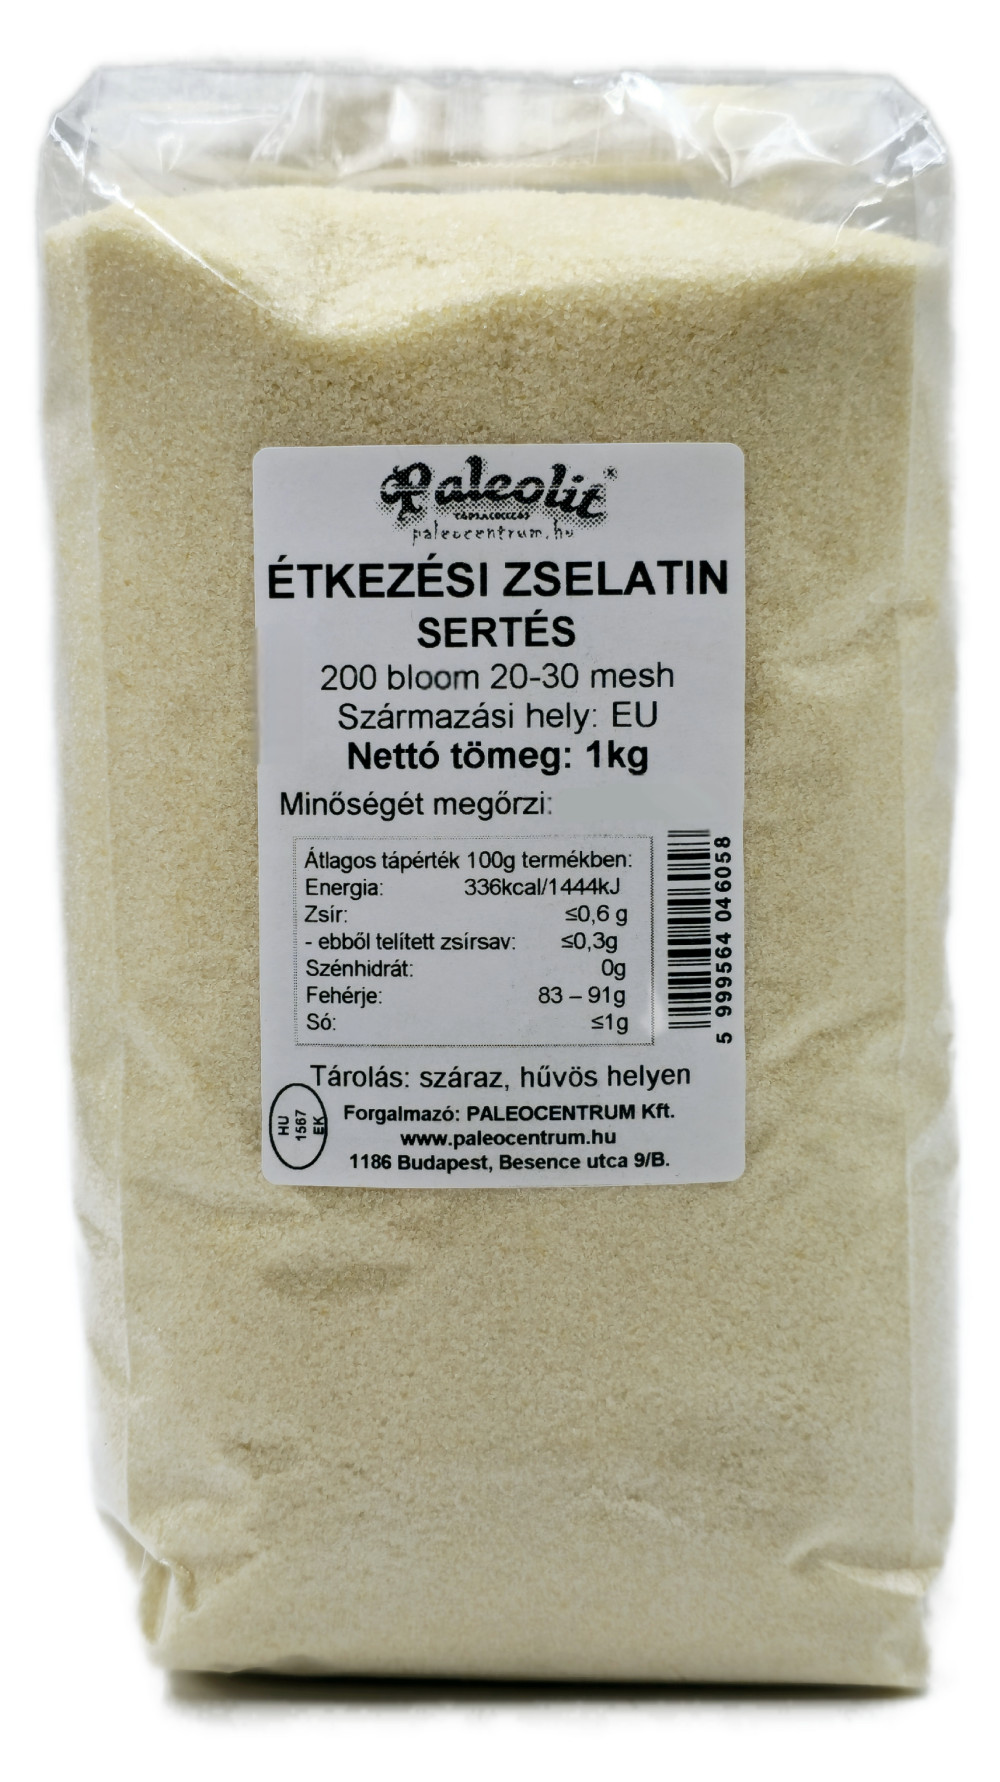 Paleolit Zselatin étkezési, sertés 1kg 200 Bloom